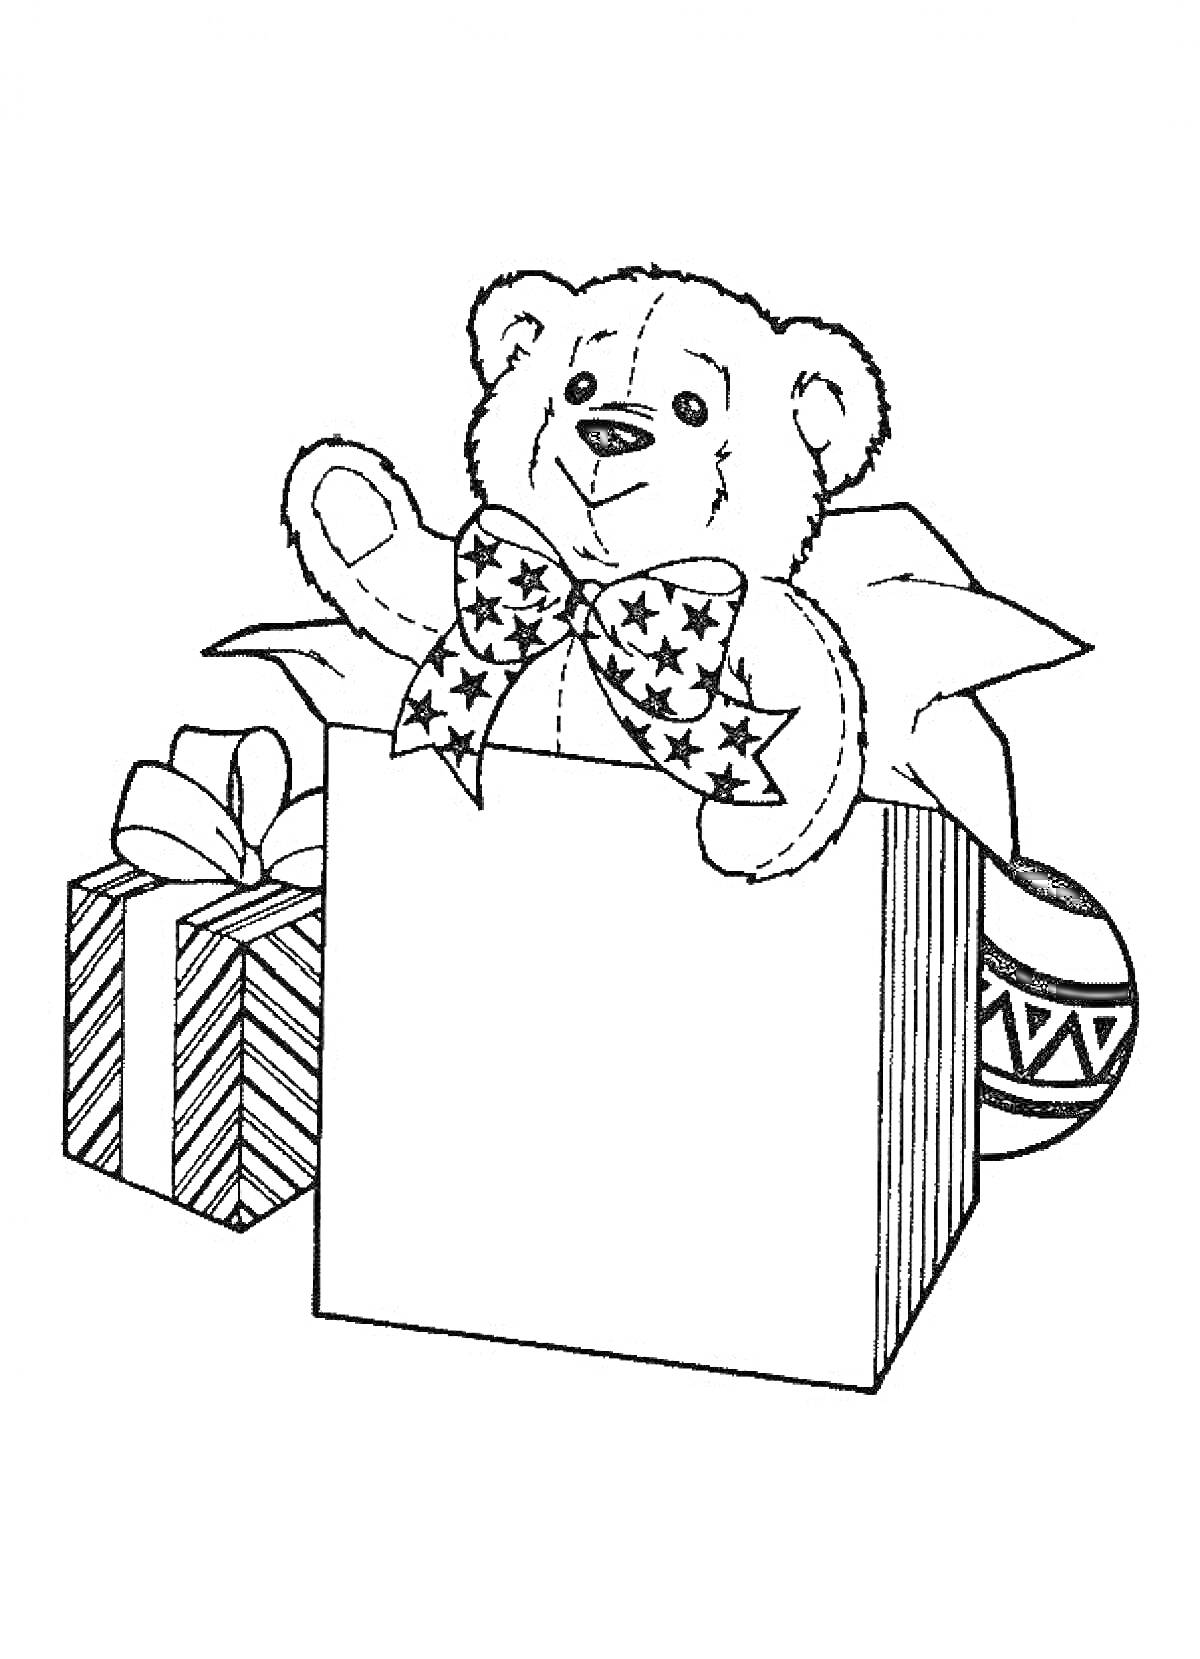 Раскраска Плюшевый медвежонок в подарочной коробке с рождественскими игрушками